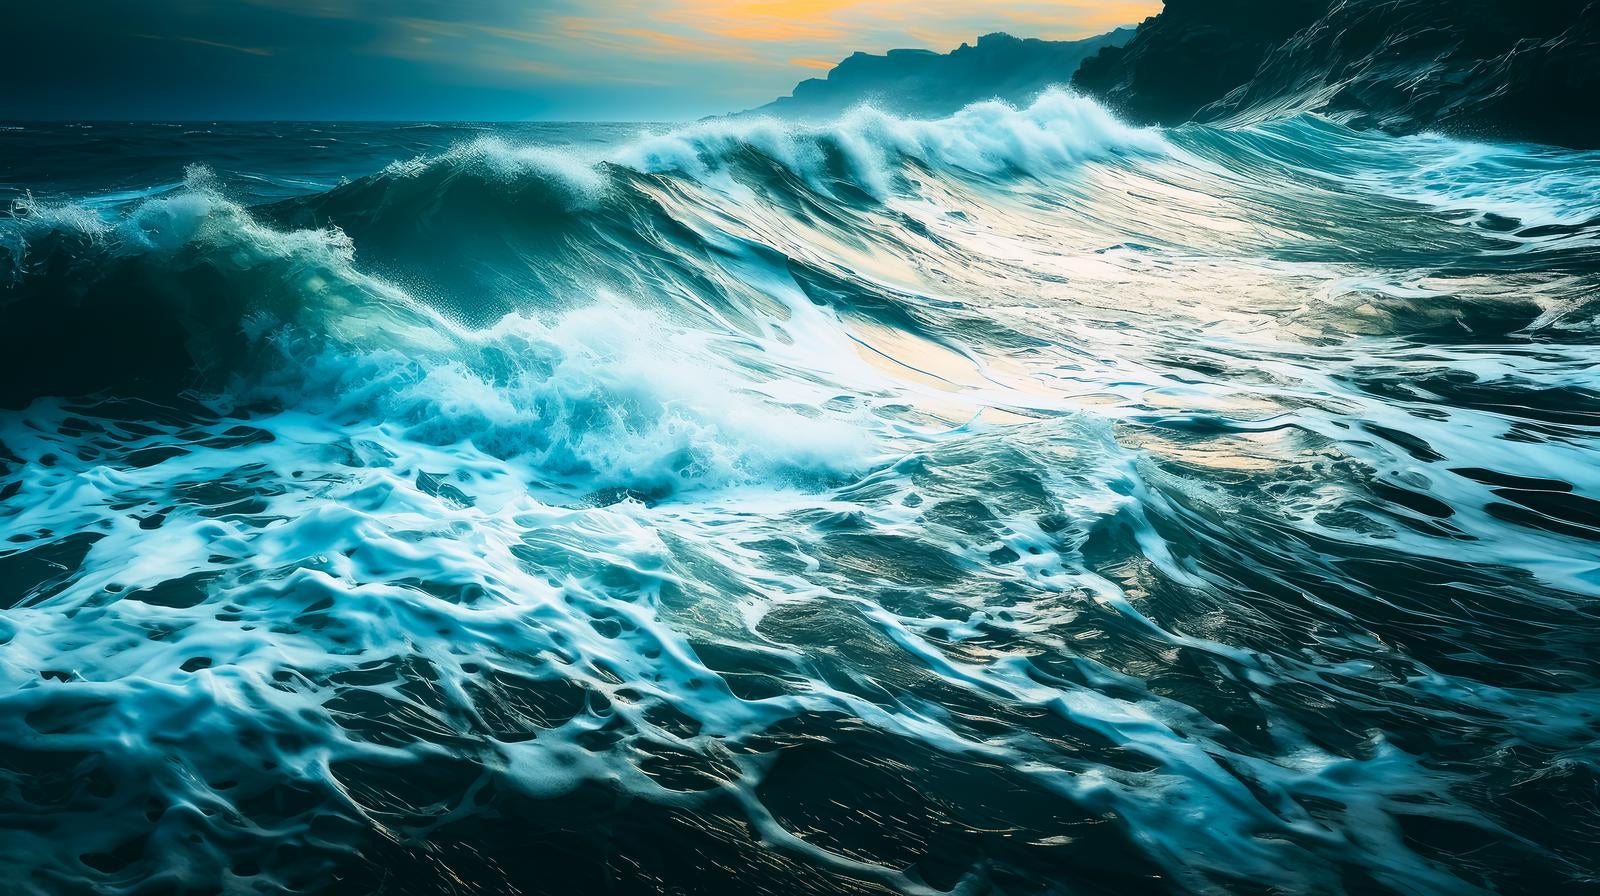 「荒れ狂う自然の嵐と波」の写真